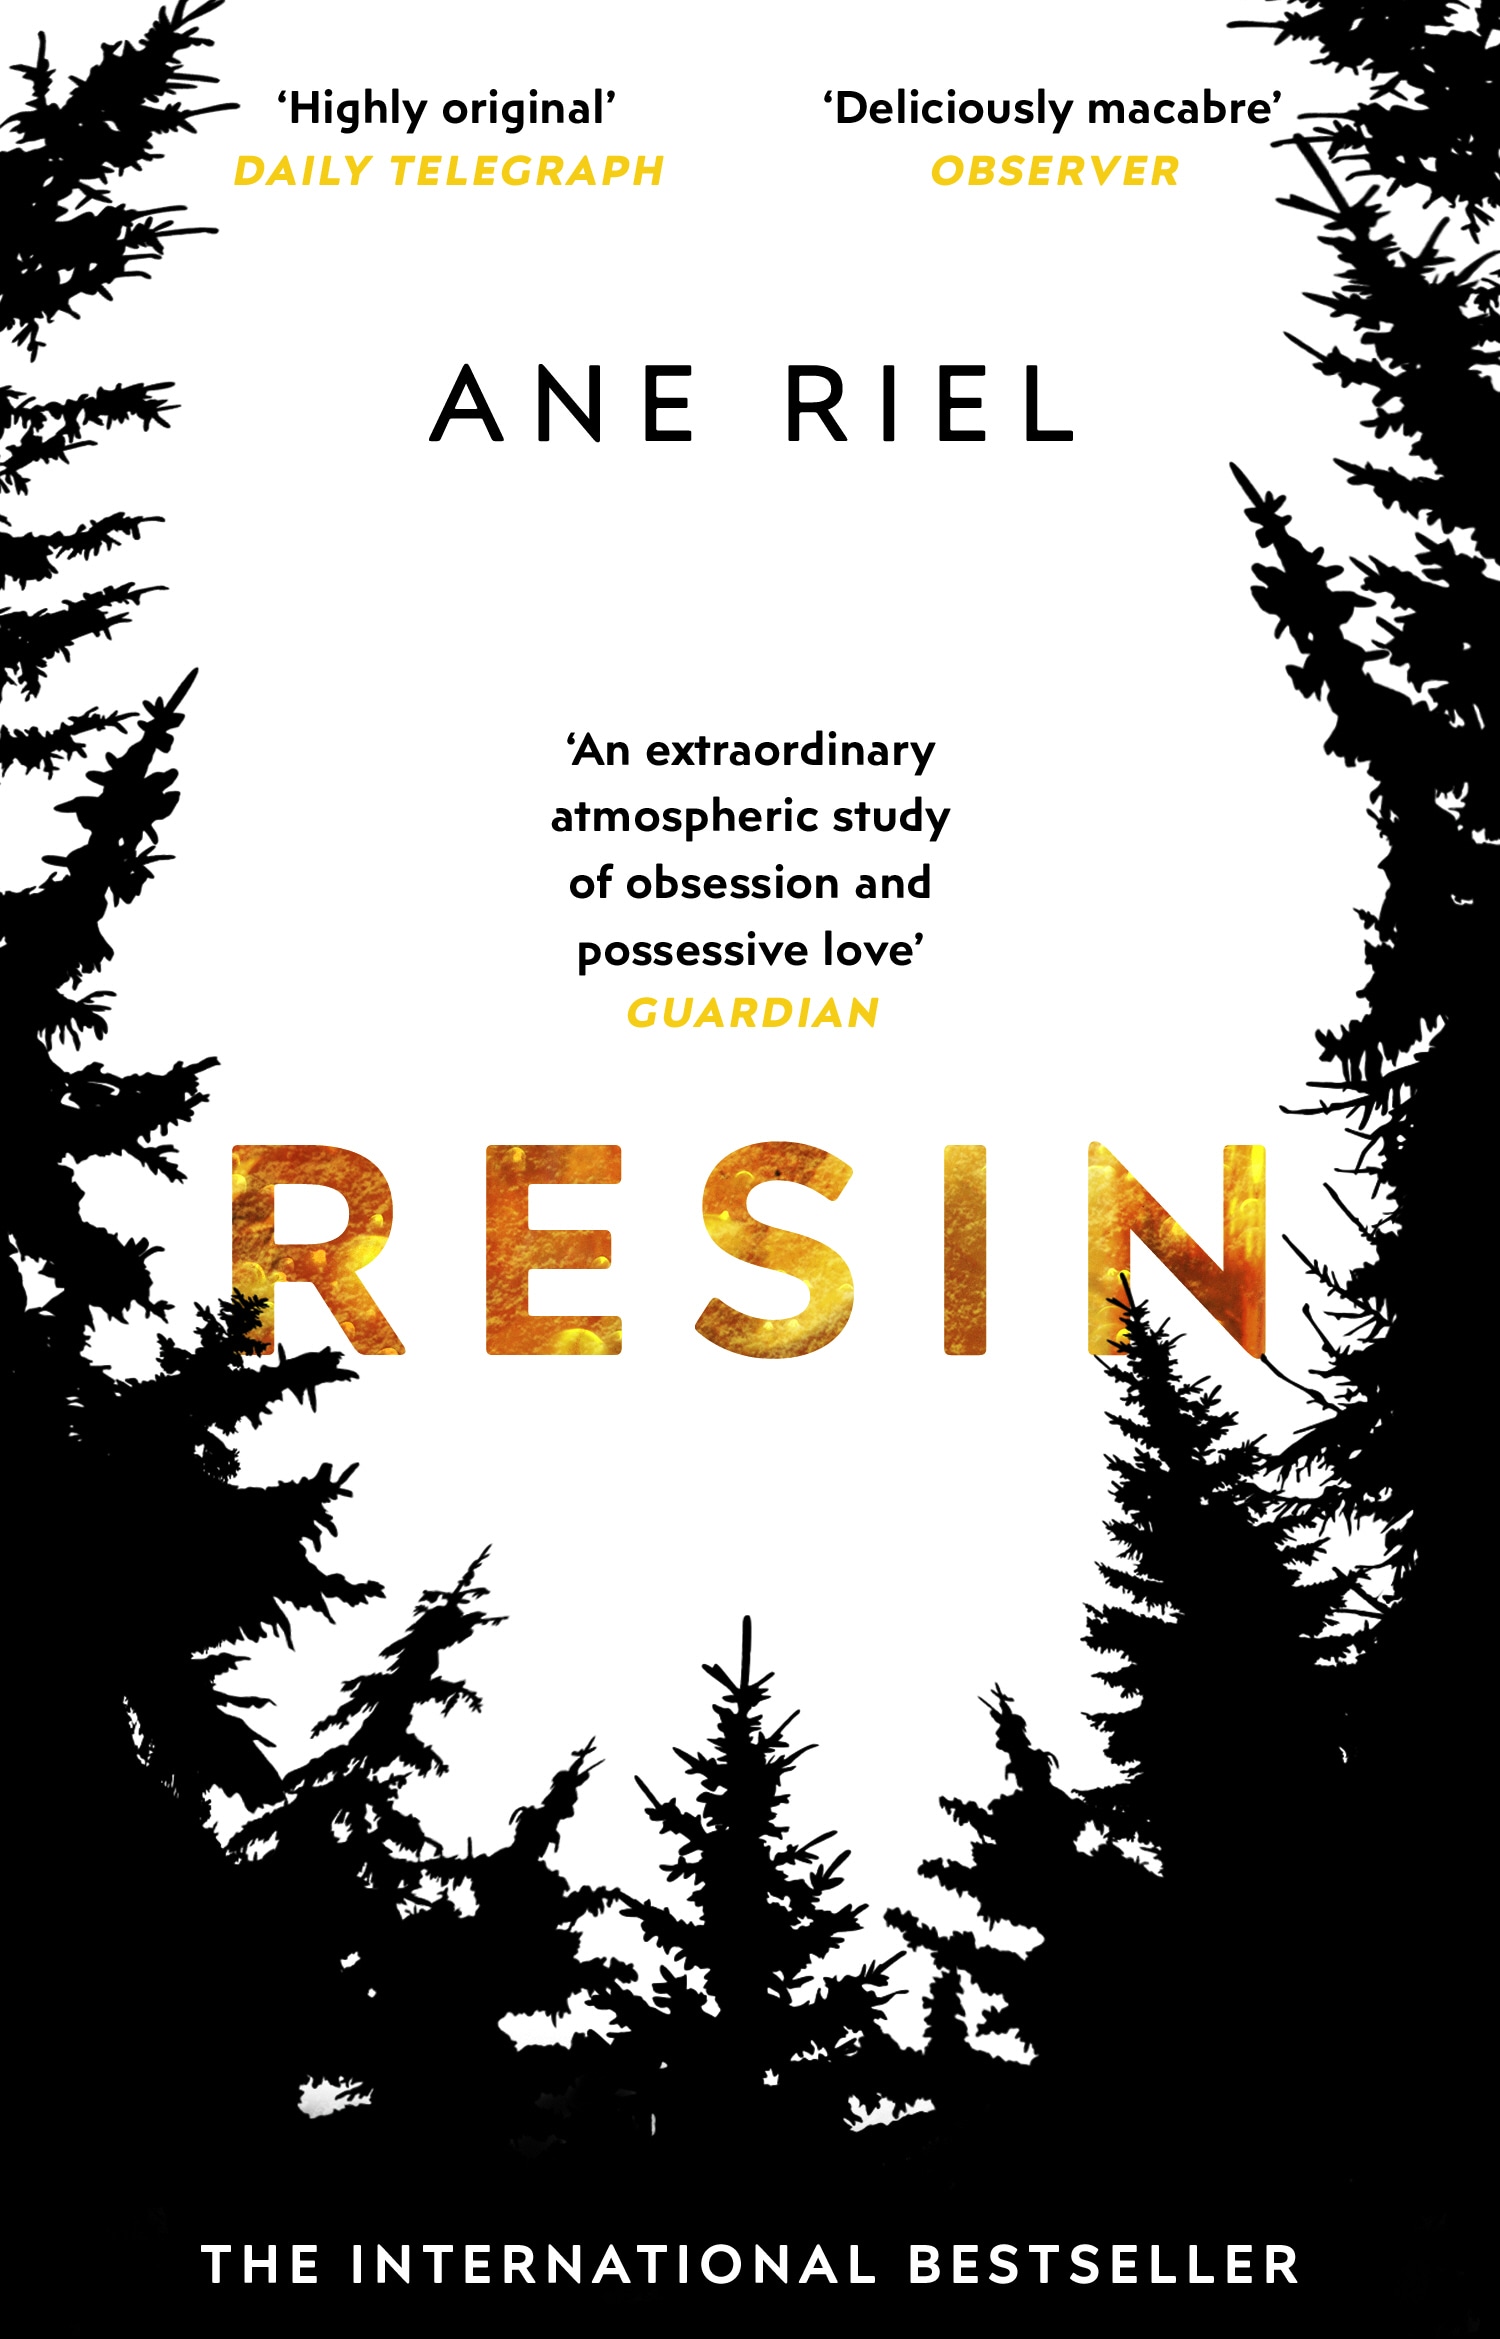 Book “Resin” by Ane Riel — April 18, 2019